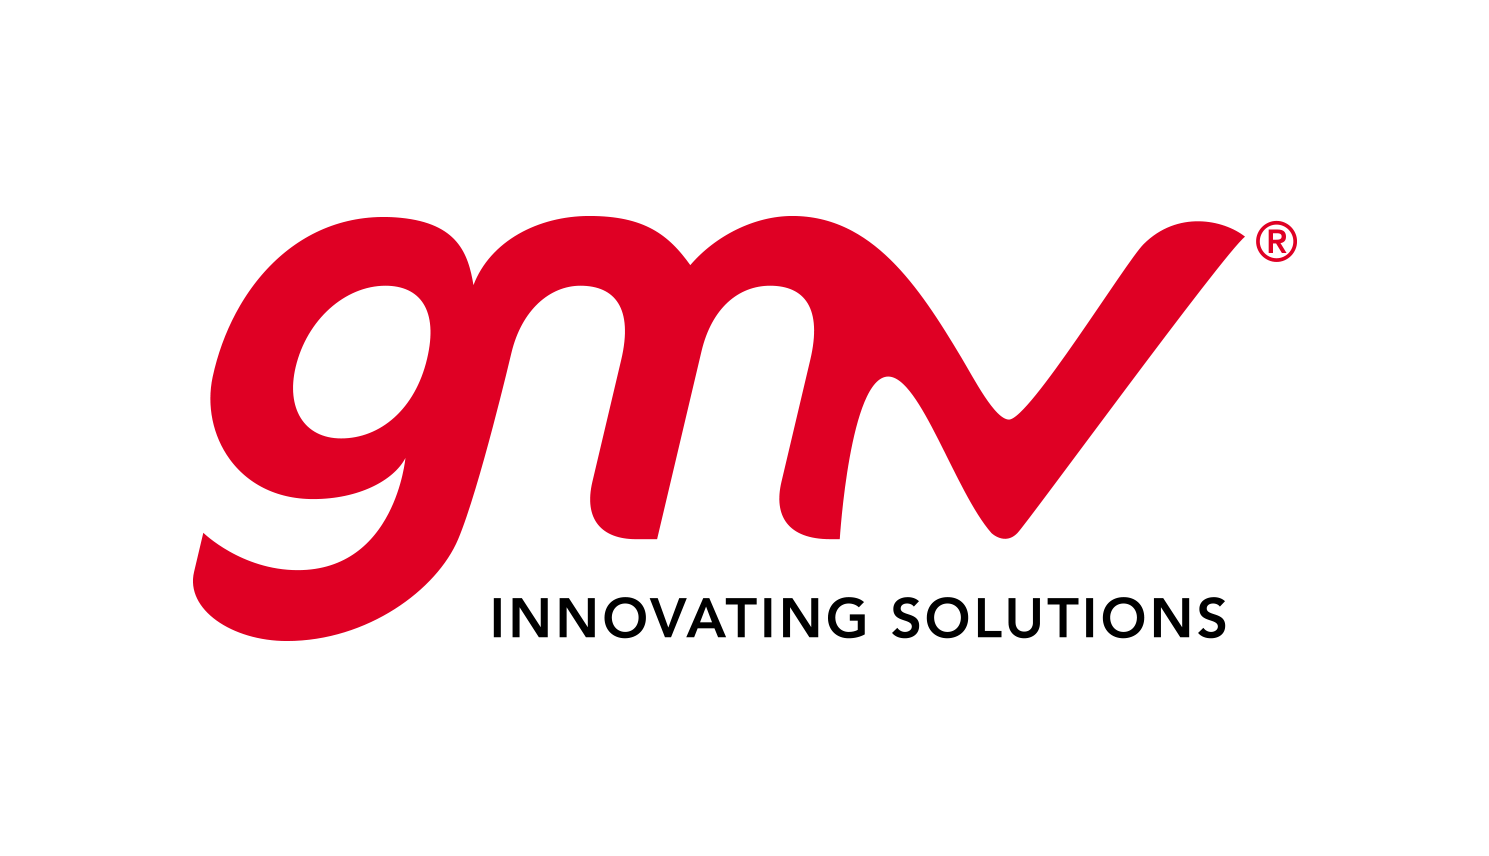 gmv rgbredblack - Tìm hiểu về GMV là gì? Cách sử dụng GMV trong tính toán